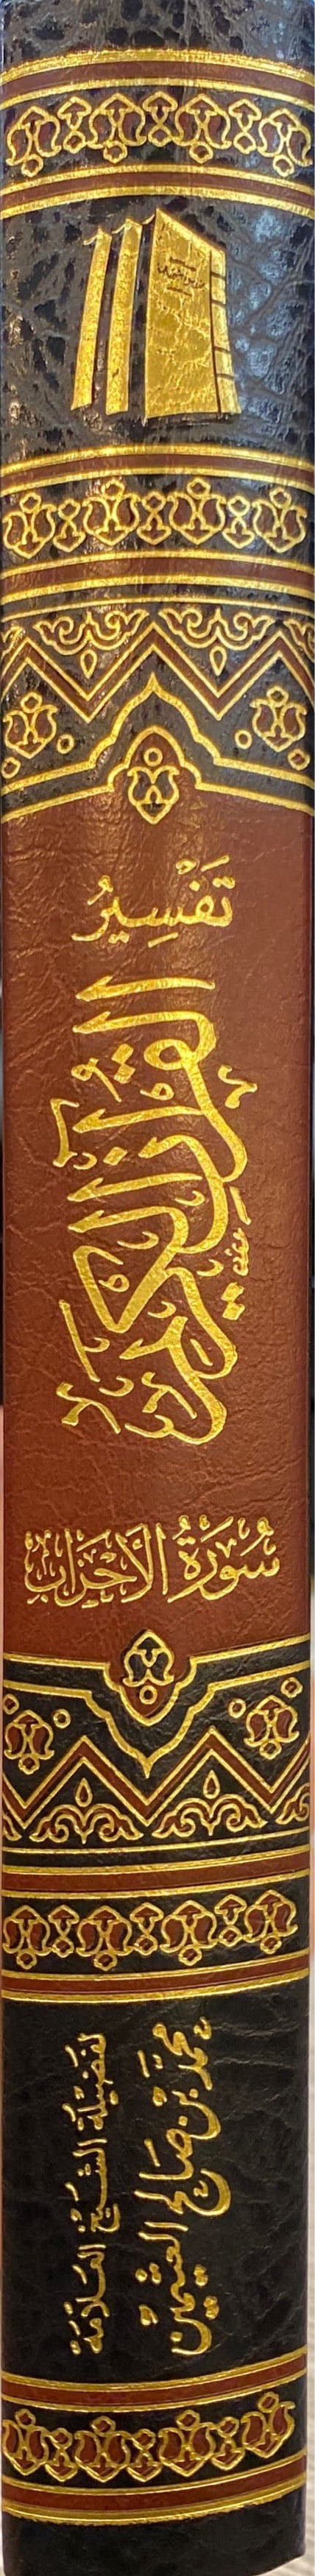 تفسير القران الكريم - سورة الأحزاب    Tafsir Al Quran Al Karim - Surah al Ahzab